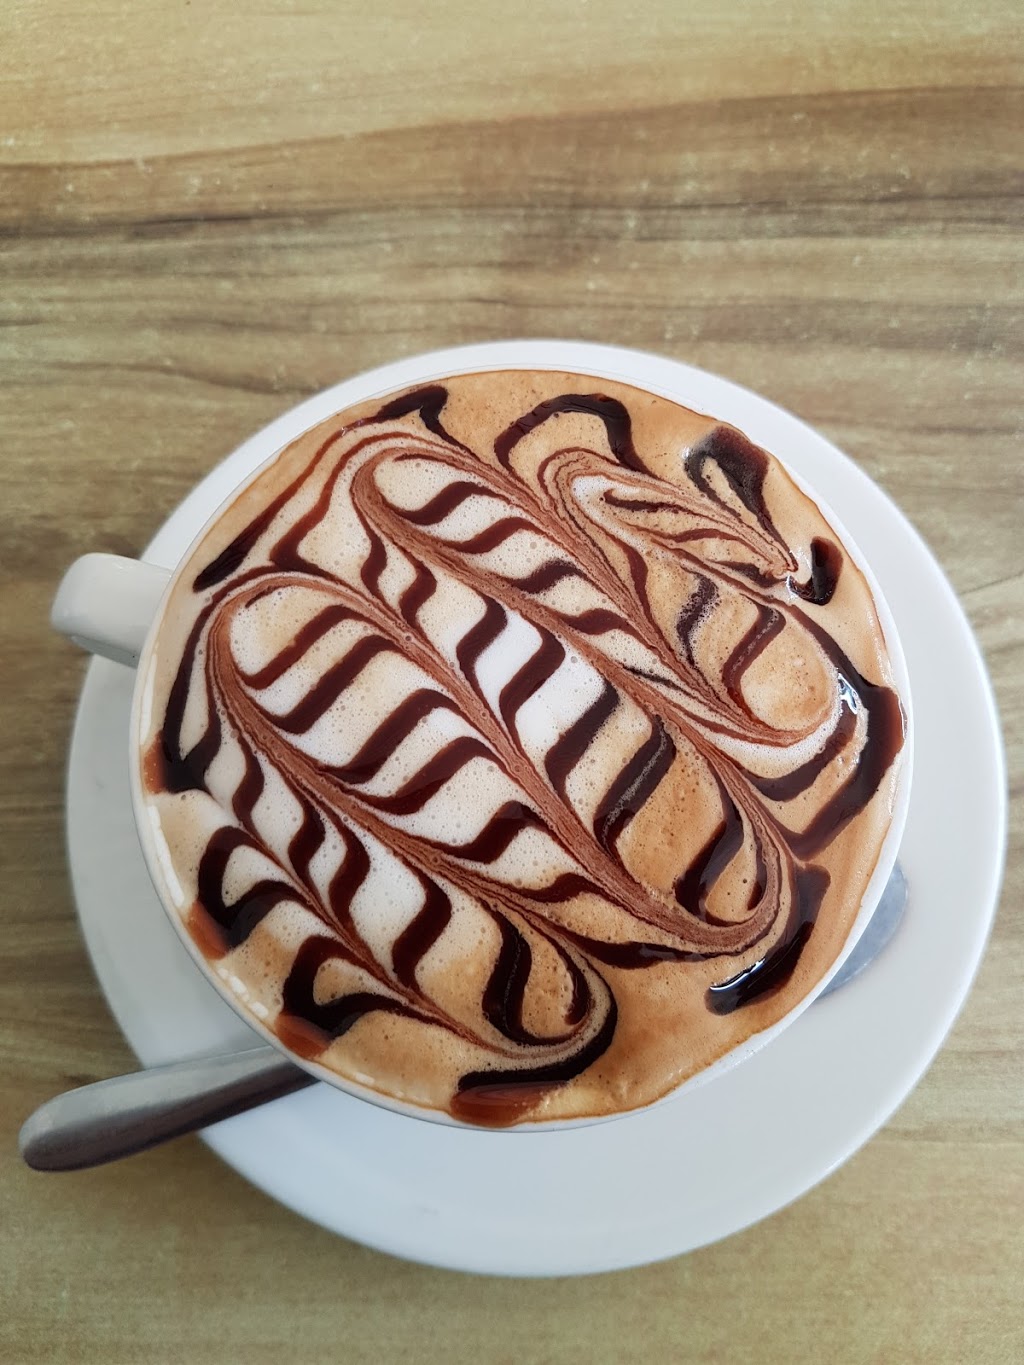 Jaques Coffee Plantation | cafe | 137 Leotta Rd, Mareeba QLD 4880, Australia | 0740933284 OR +61 7 4093 3284